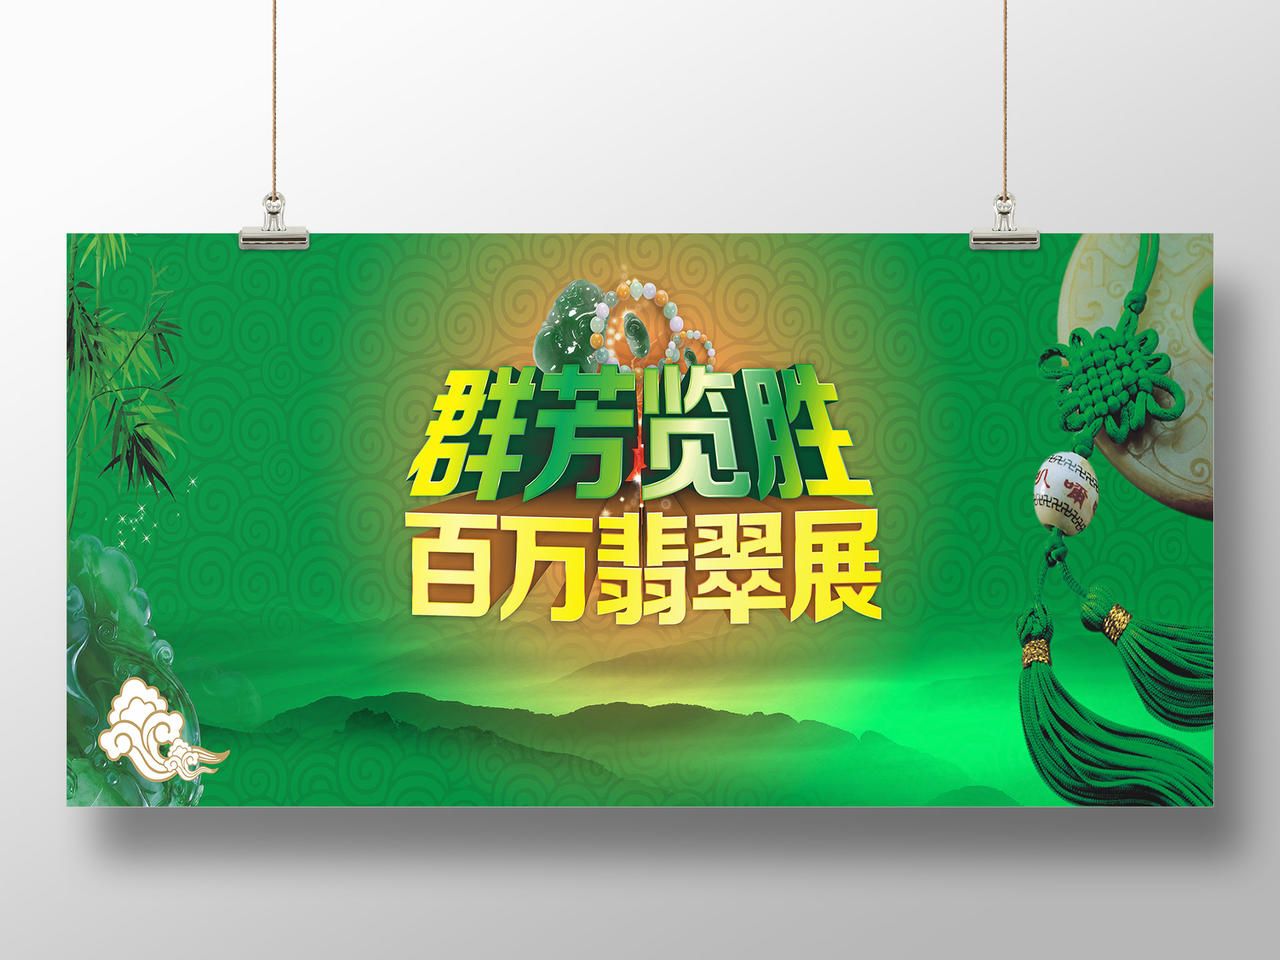 翠竹绿色玉器图腾背景群芳览胜百万翡翠展展会海报